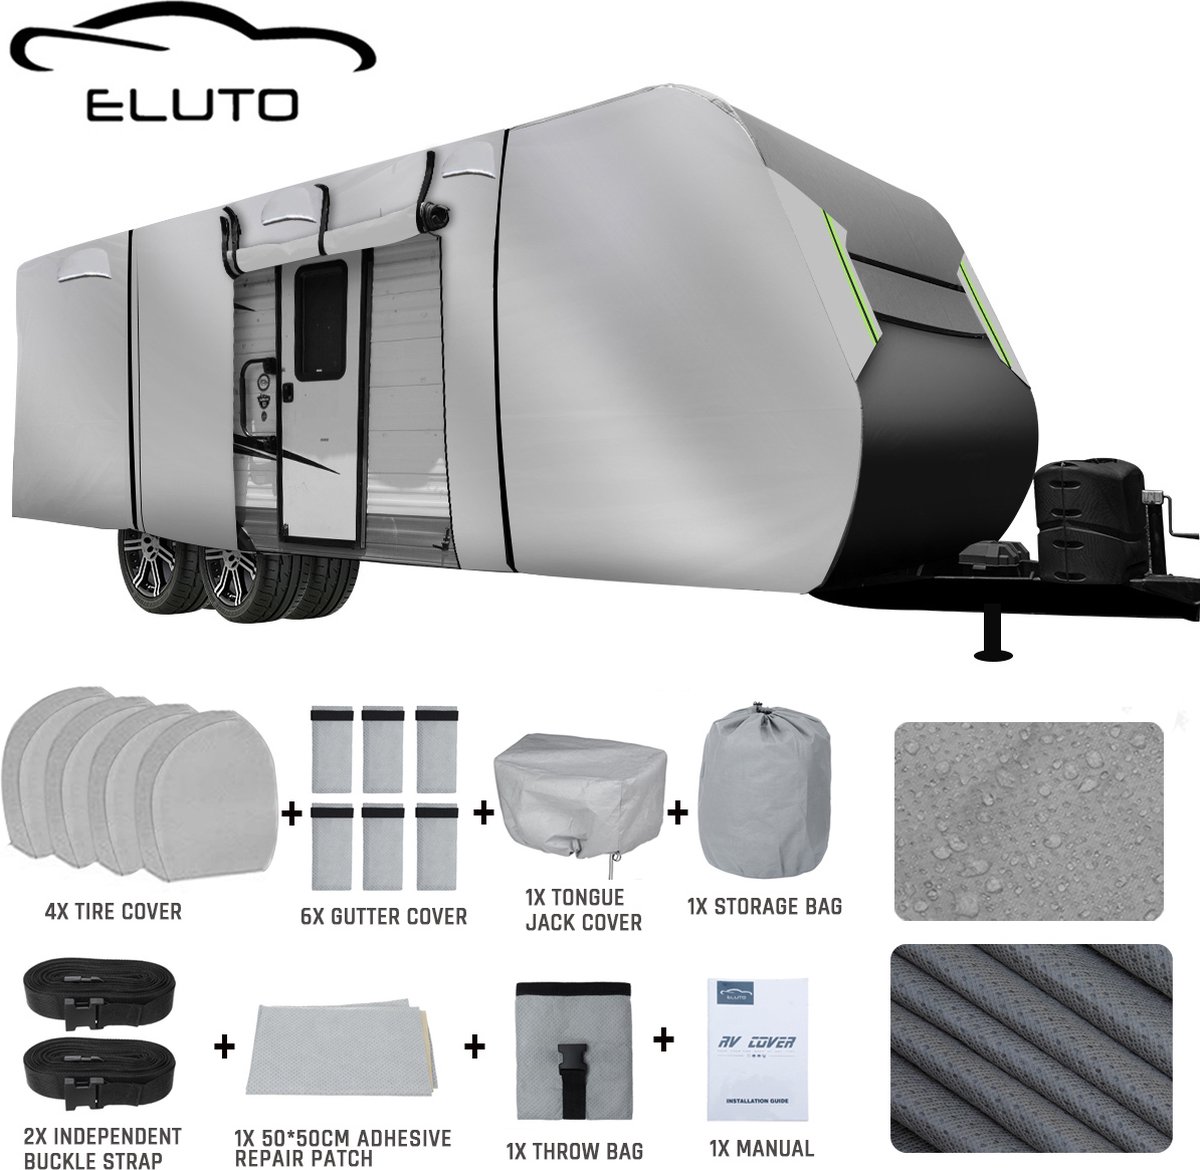 ELUTO Caravanhoes 671*267*274 CM - Waterdicht, UV-bescherming, sneeuwbestendig - Grijs